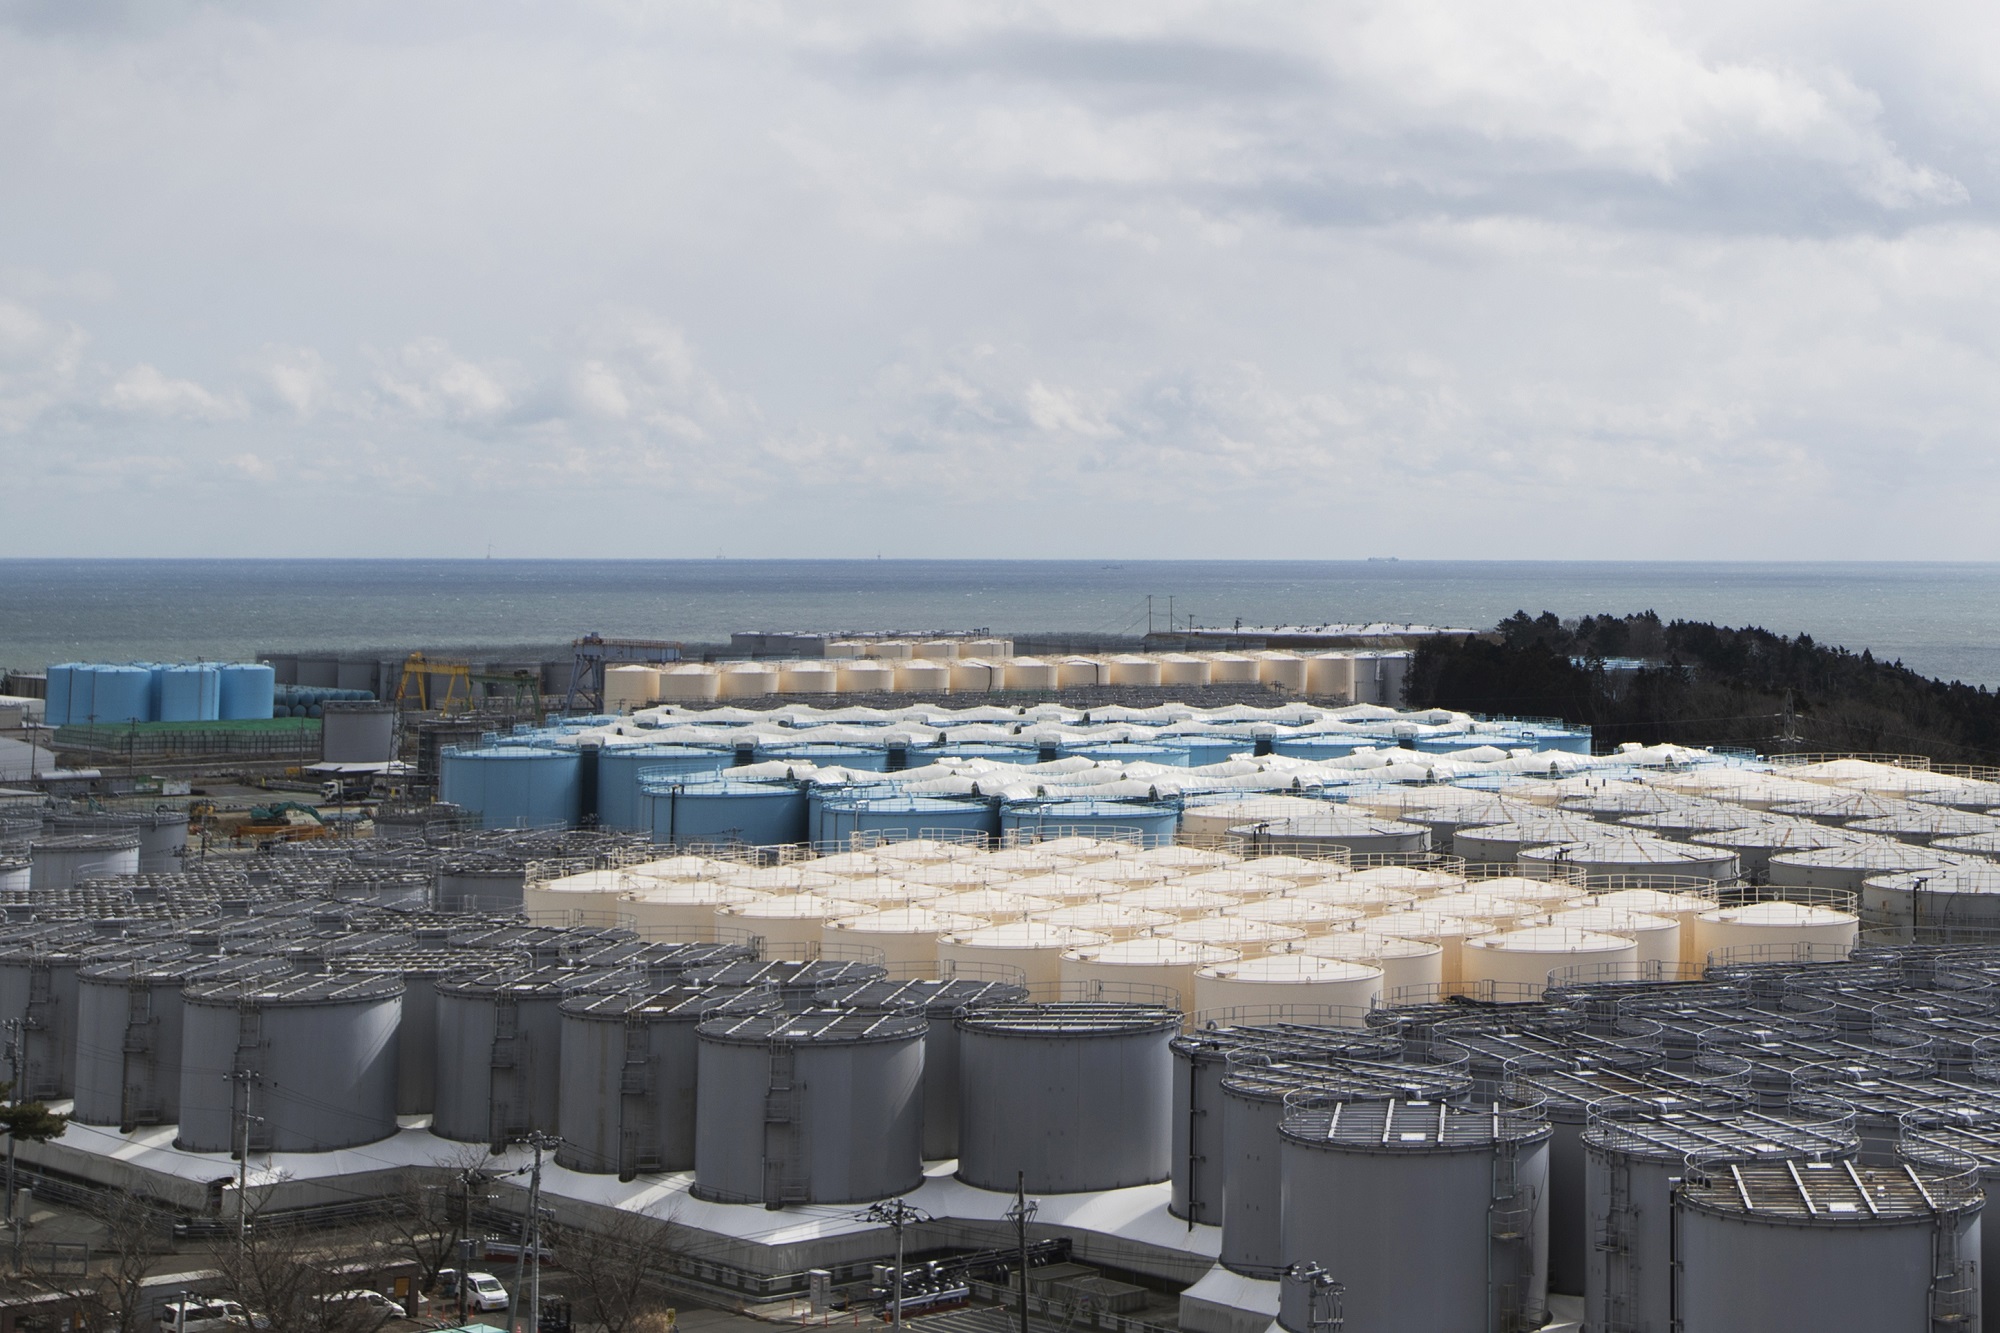 Ιαπωνία: Έκκληση των νησιωτικών χωρών να μην πετάξει ακόμη στη θάλασσα τα μολυσμένα νερά του πυρηνικού εργοστασίου στη Φουκοσίμα